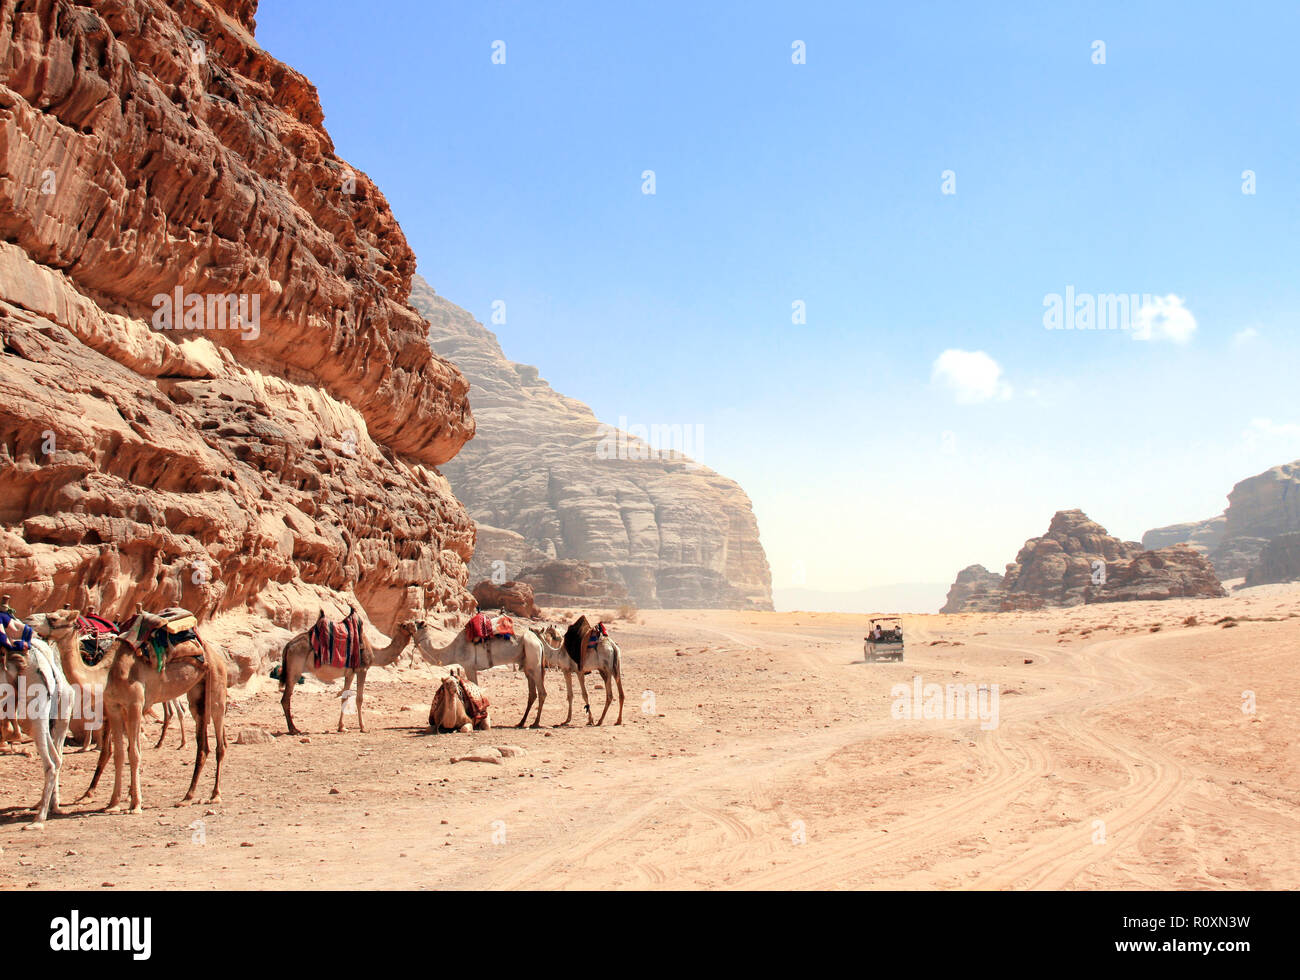 Safari en Jeep dans le désert de Wadi Rum, Jordanie. Les chameaux et les touristes dans la voiture en dehors de la route sur le sable entre les rochers Banque D'Images